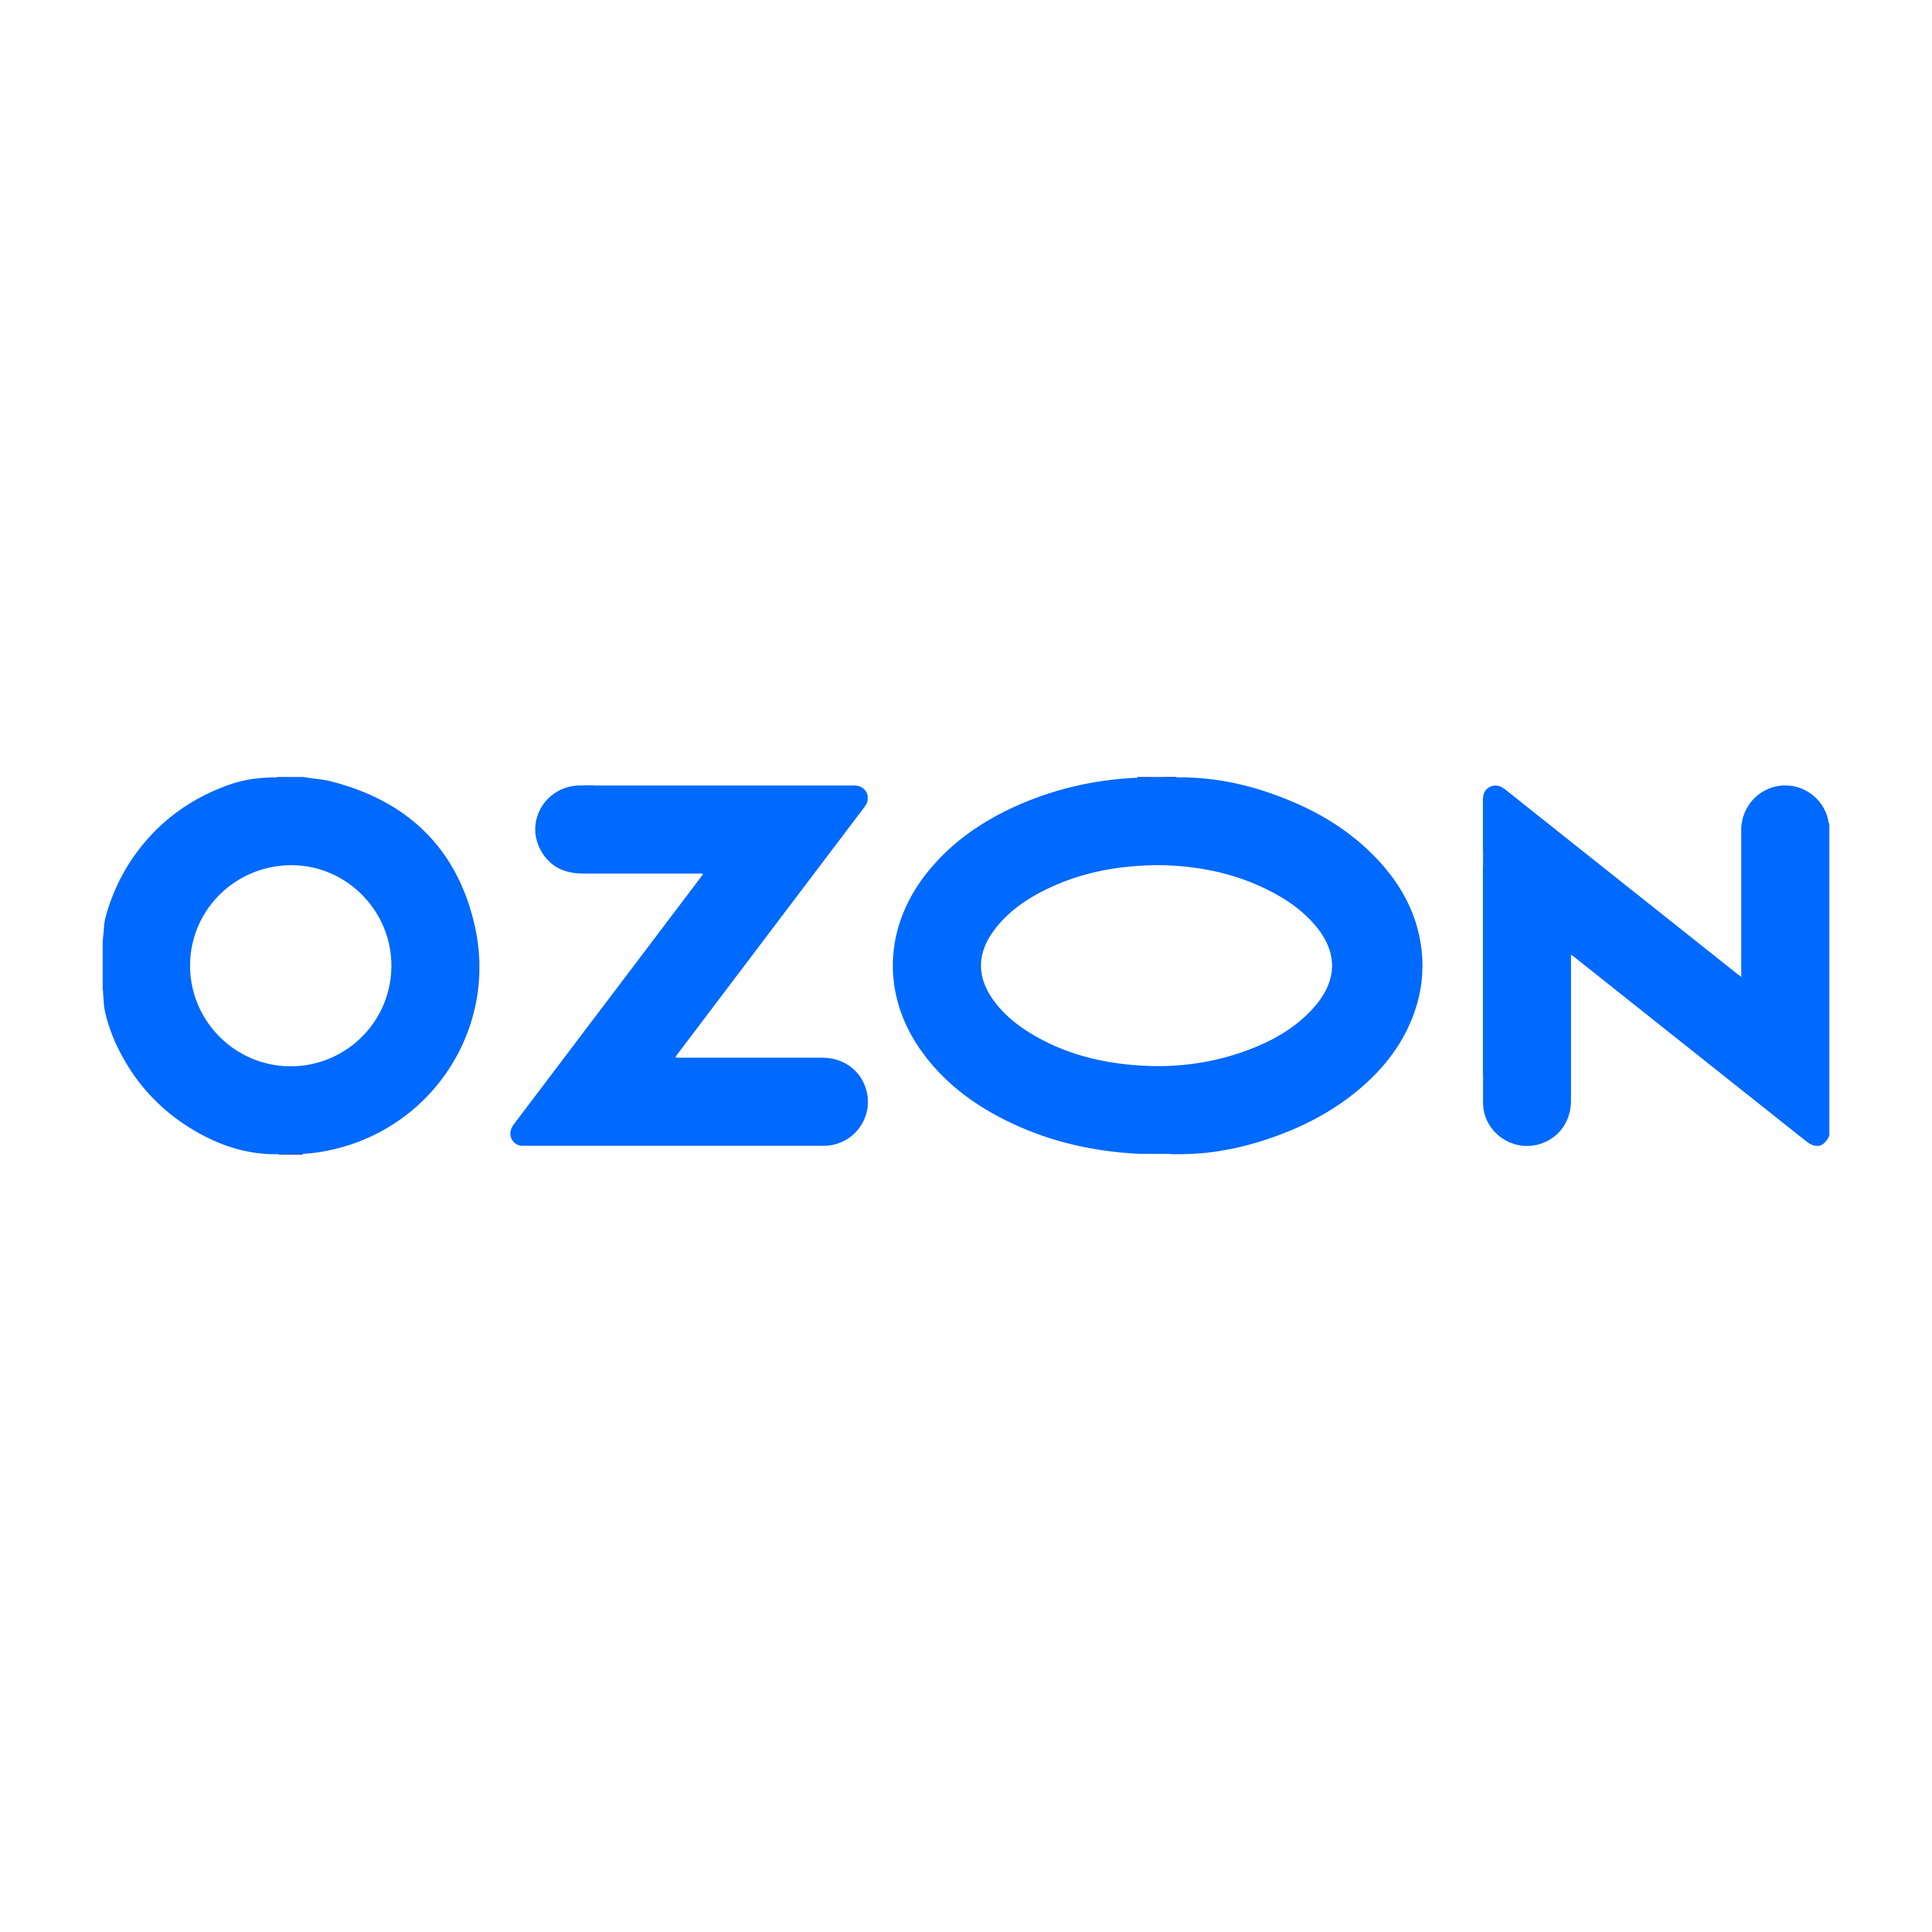 OZON平台解析：本土店与跨境店的关键区别